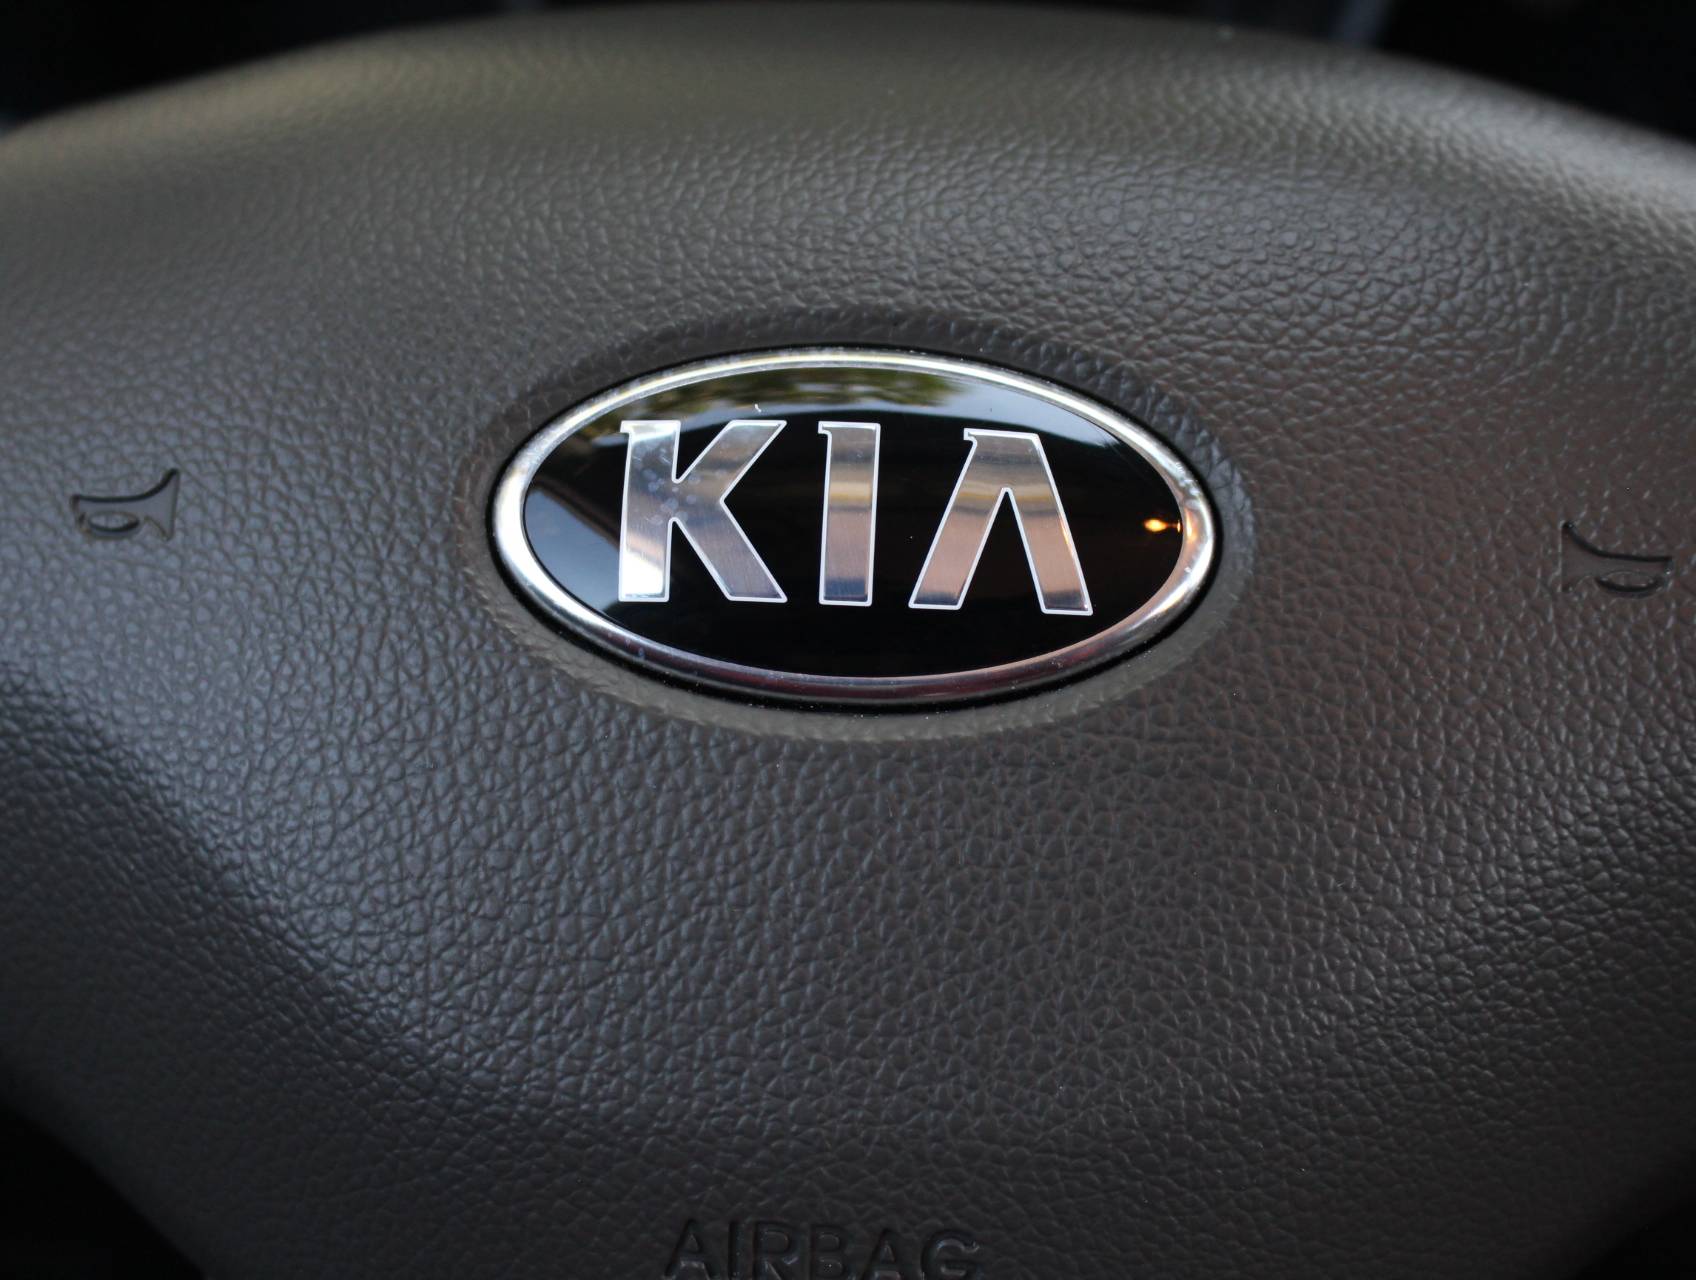 Florida Fine Cars - Used KIA SPORTAGE 2014 MARGATE Lx